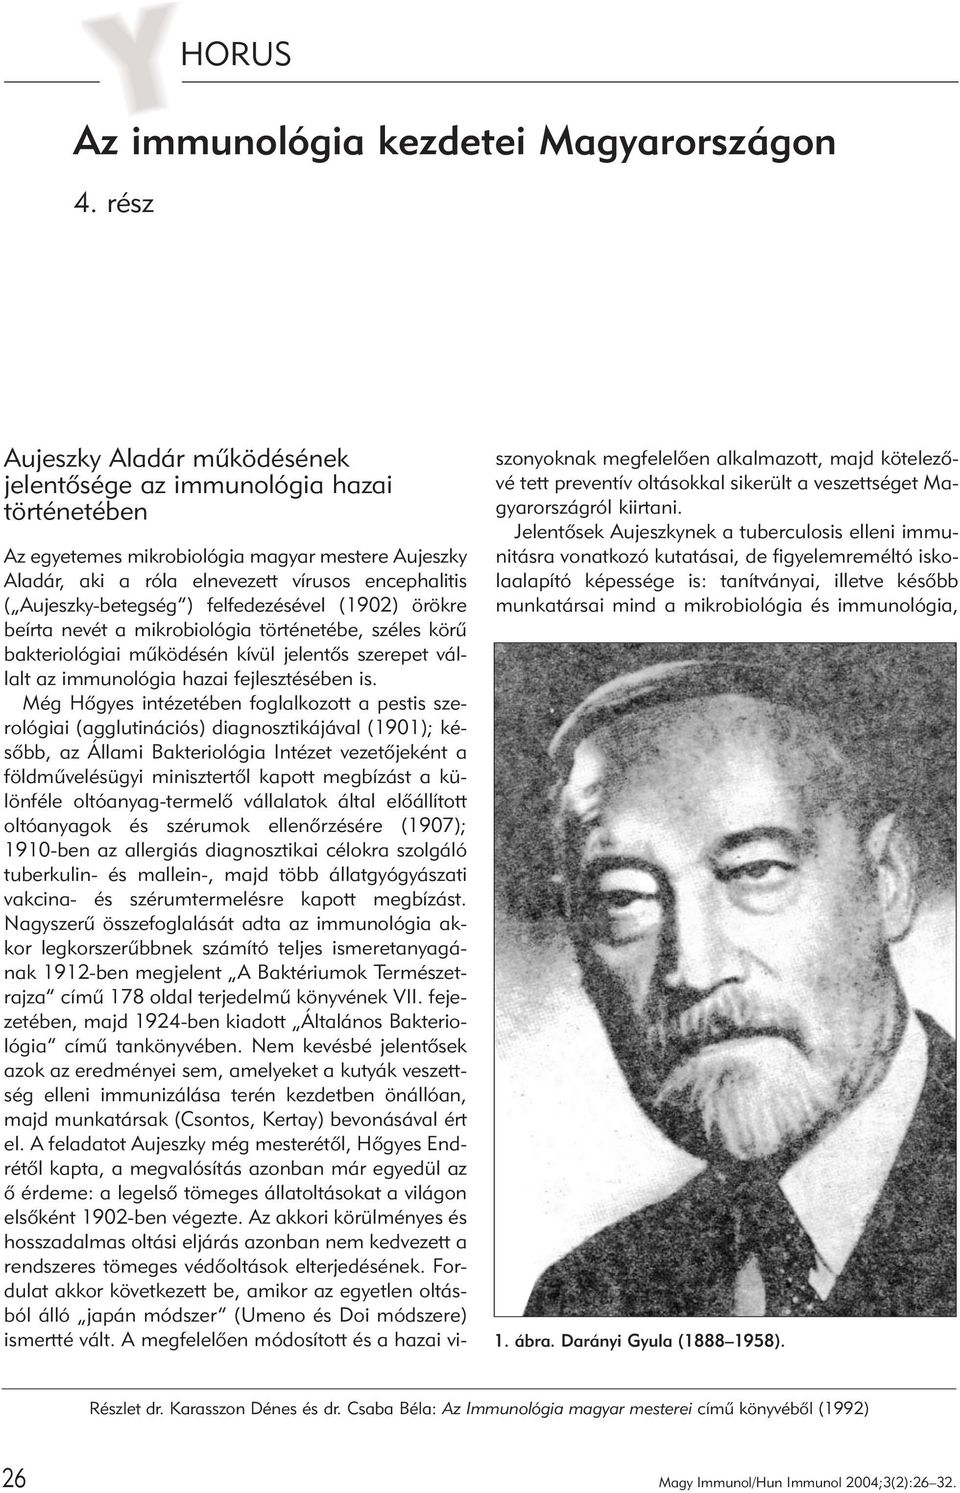 Aujeszky-betegség ) felfedezésével (1902) örökre beírta nevét a mikrobiológia történetébe, széles körû bakteriológiai mûködésén kívül jelentõs szerepet vállalt az immunológia hazai fejlesztésében is.